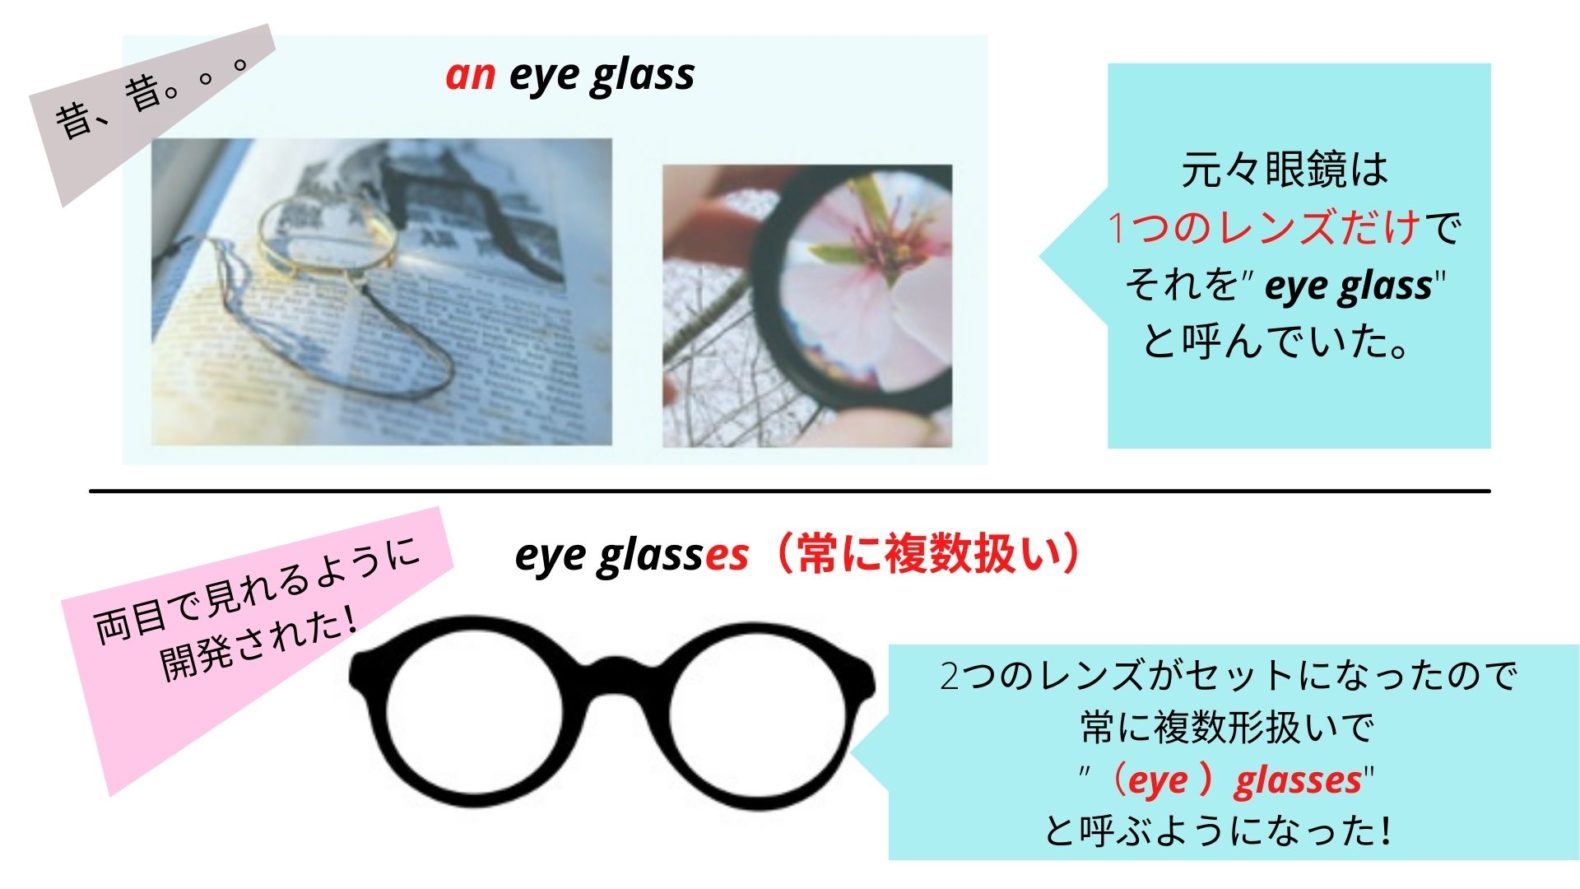 ネィティヴから教わったメガネ Glasses とガラス製コップ 複数 Glasses の異なる捉え方 なるほど納得の理由 どこでもタフ In 海外